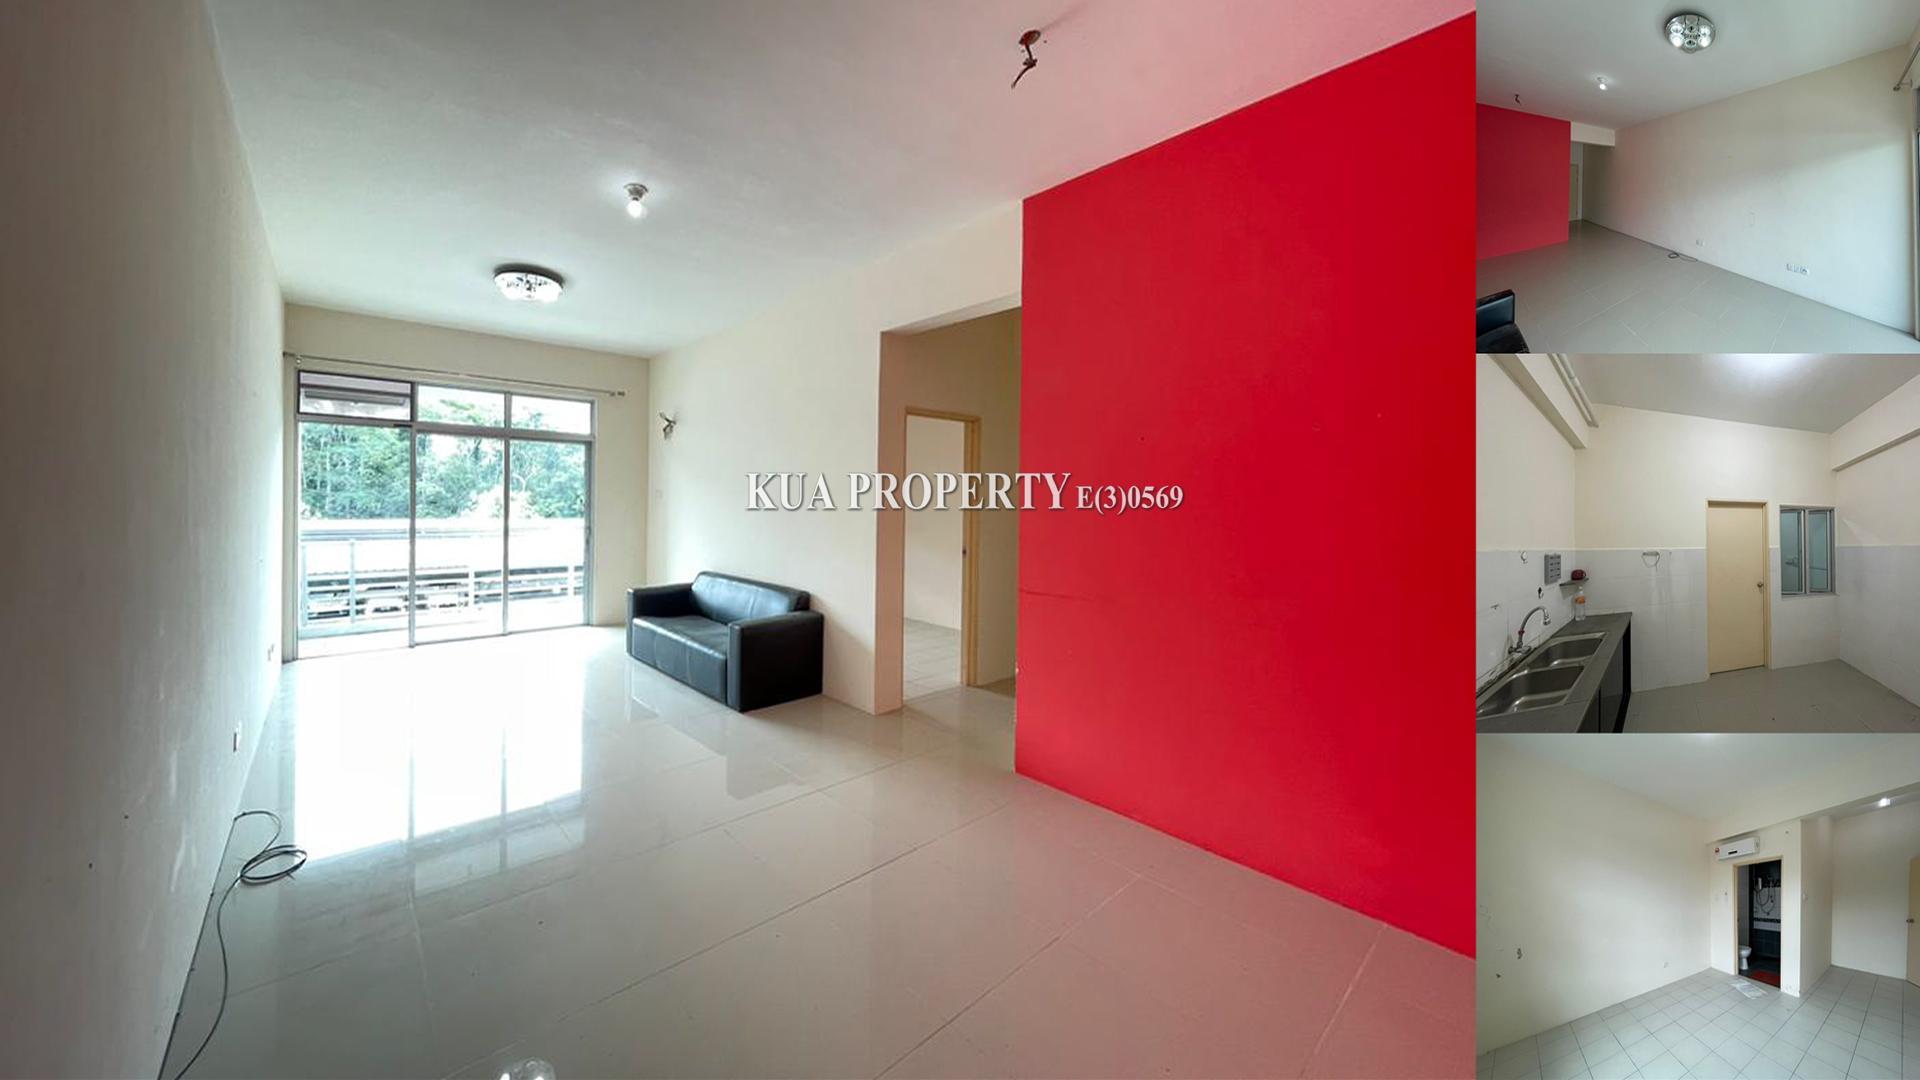 Skyvilla Condominium FOR SALE! Located at MJC, Batu Kawa